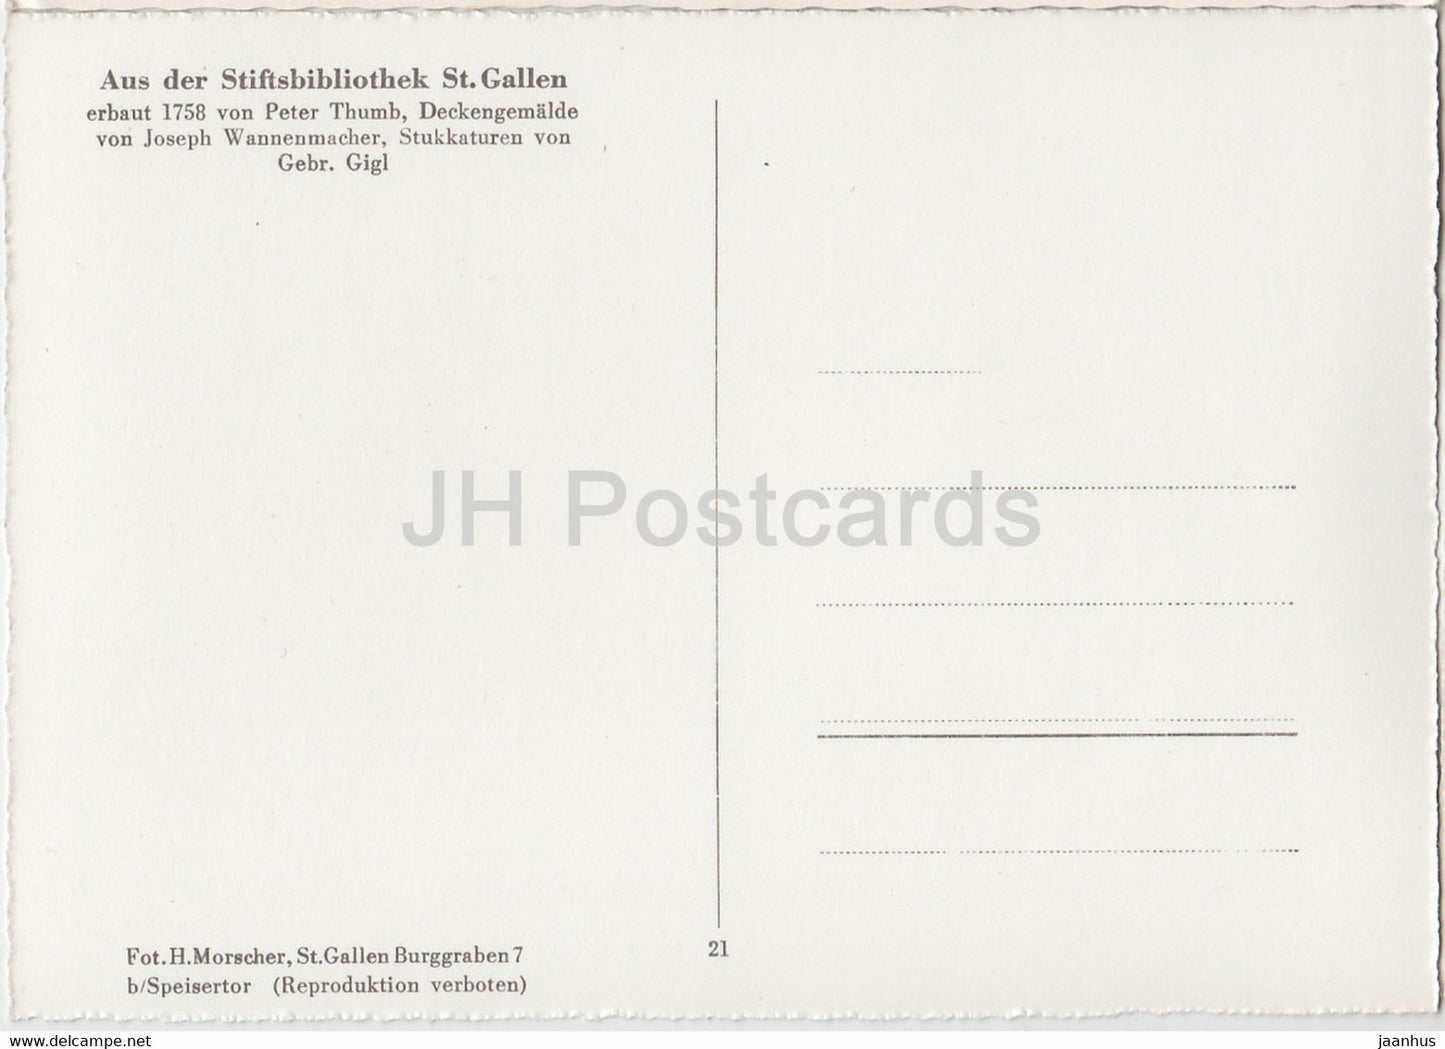 Deckengemälde - Aus der Stiftsbibliothek St. Gallen - Bibliothek - 21 - alte Postkarte - Schweiz - unbenutzt